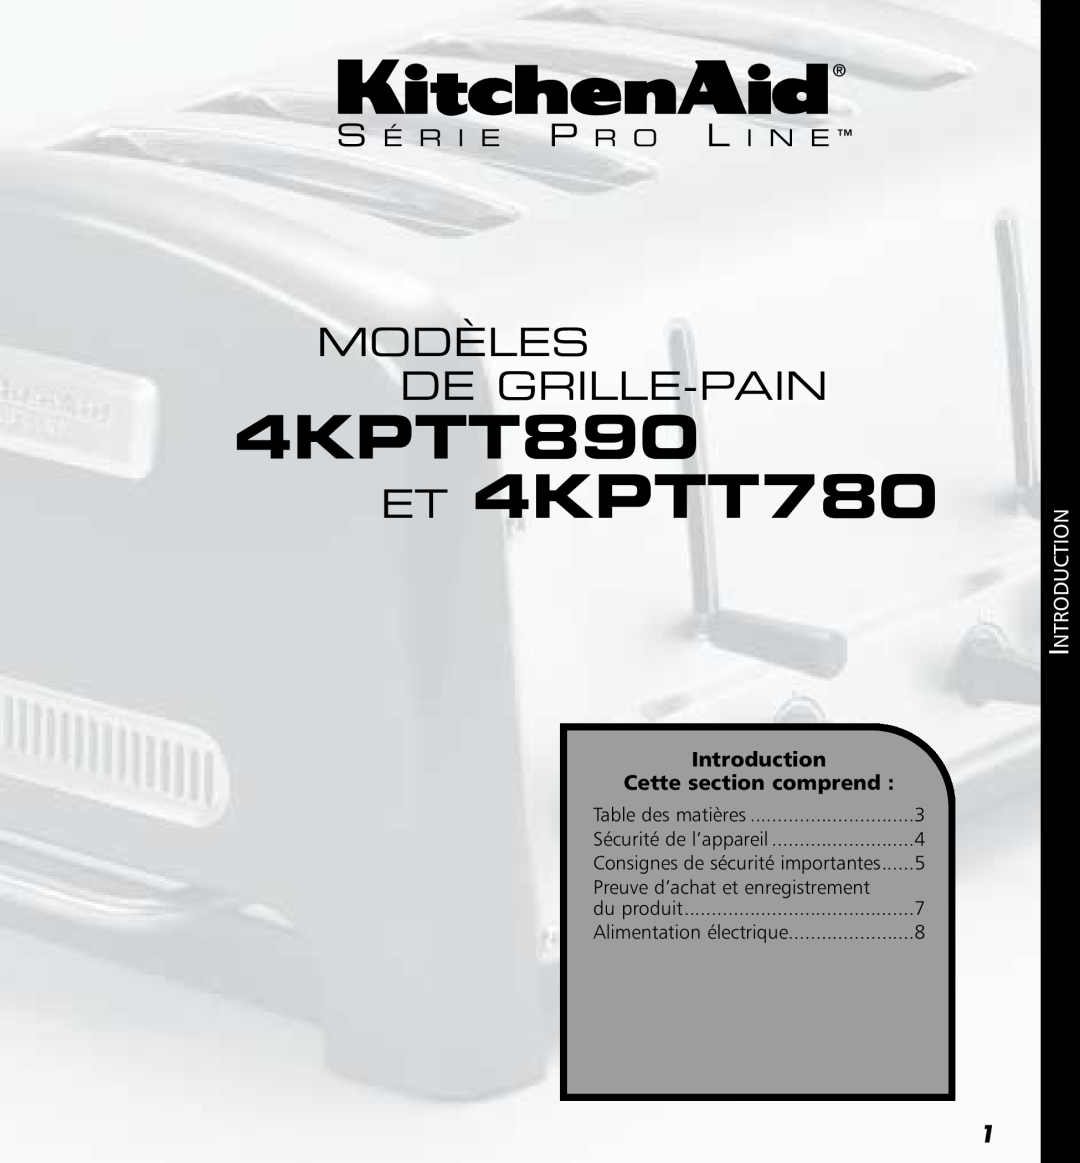 KitchenAid 4KPTT890 ET 4KPTT780, Modèles De Grille-Pain, S É R I E P R O L I N E, Introduction Cette section comprend 